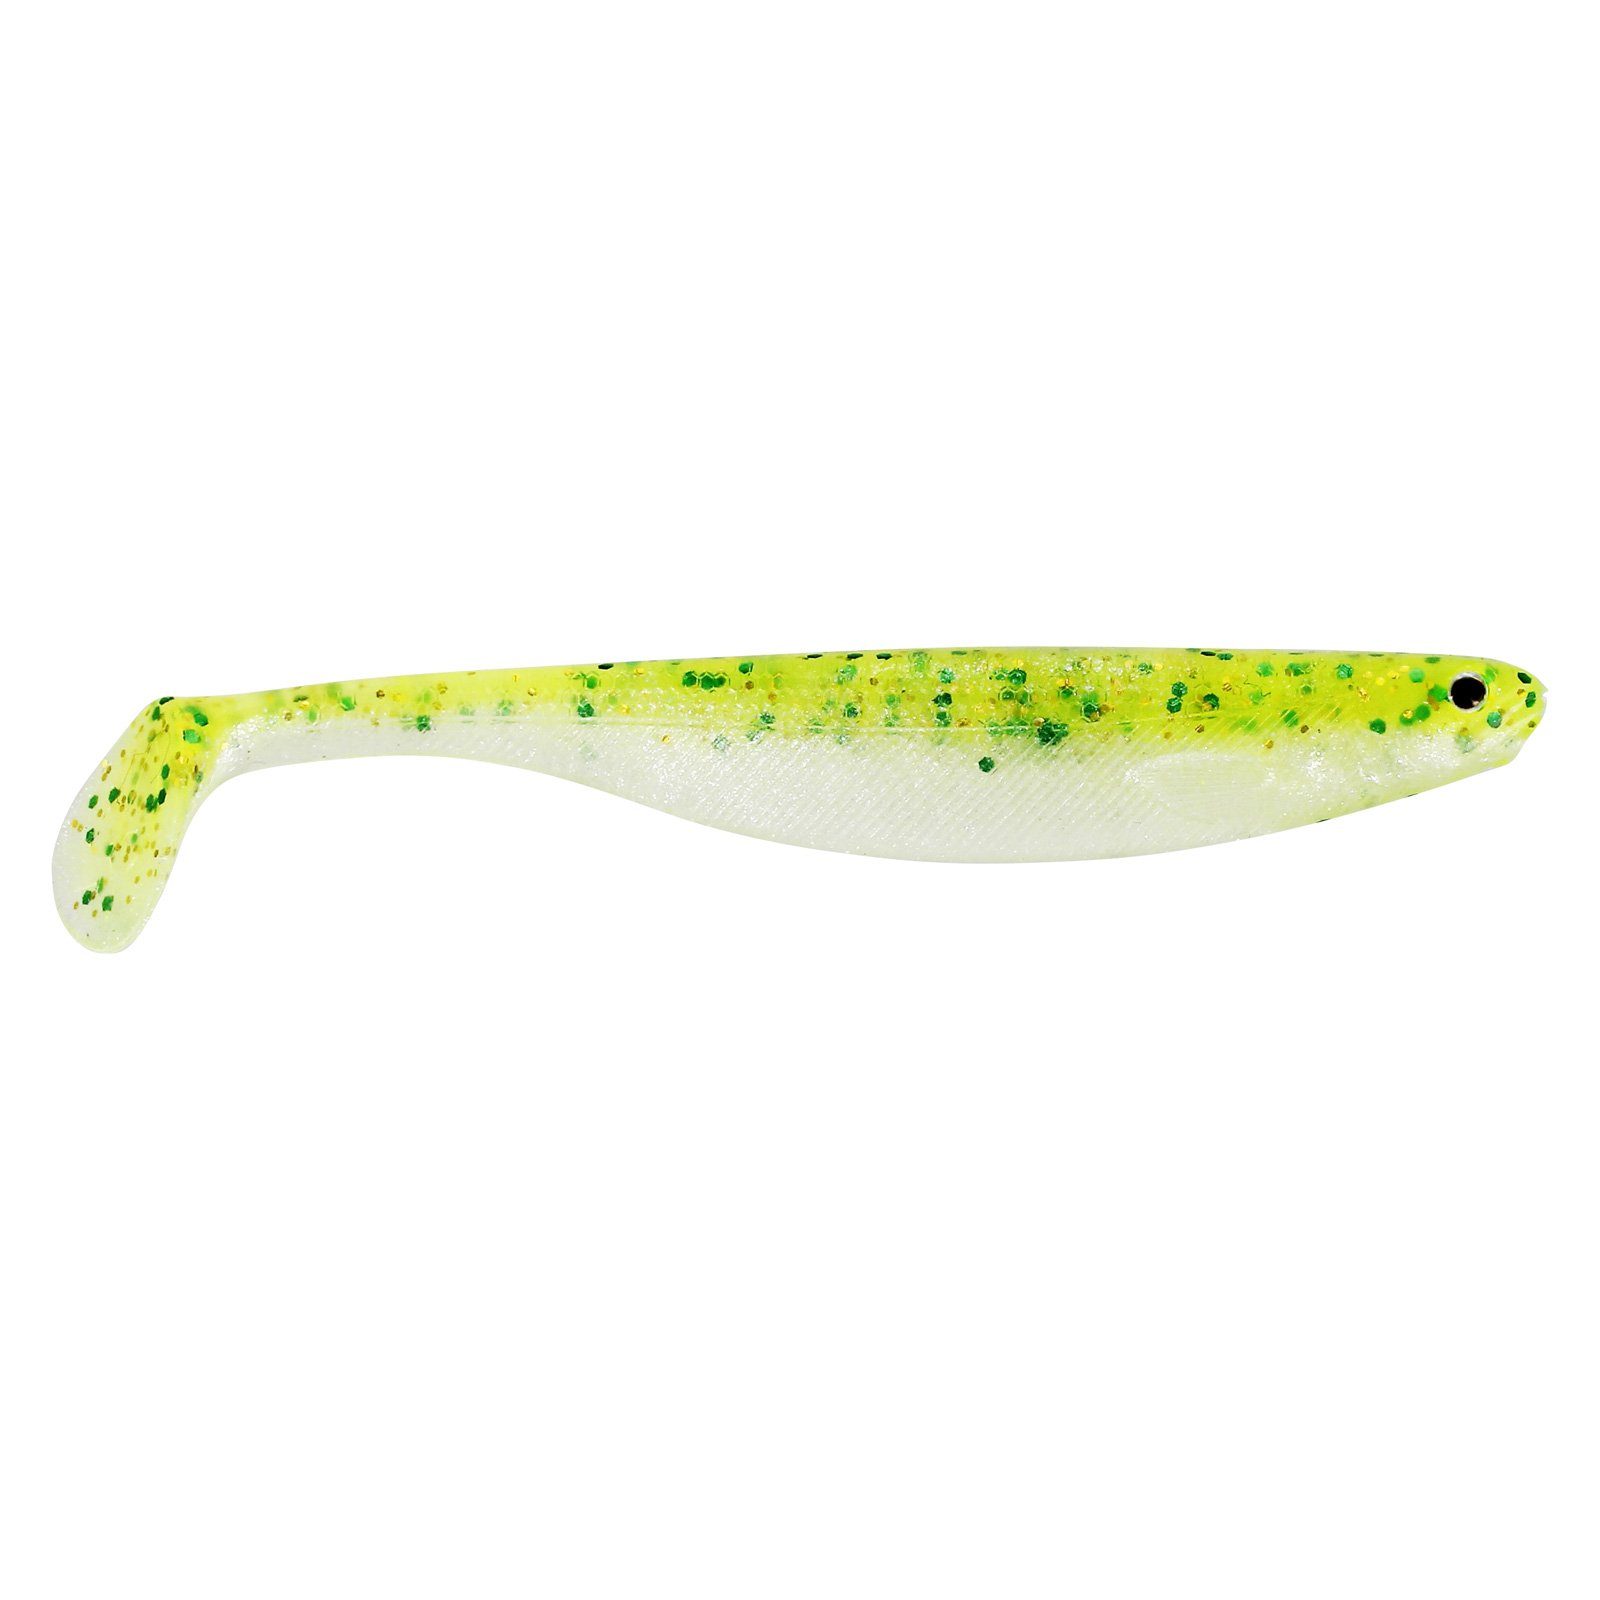 Riesiger Verkauf! Westin Fishing Kunstköder, Gummifisch Shad Chartreuse Sparkling Slim Teez 10cm